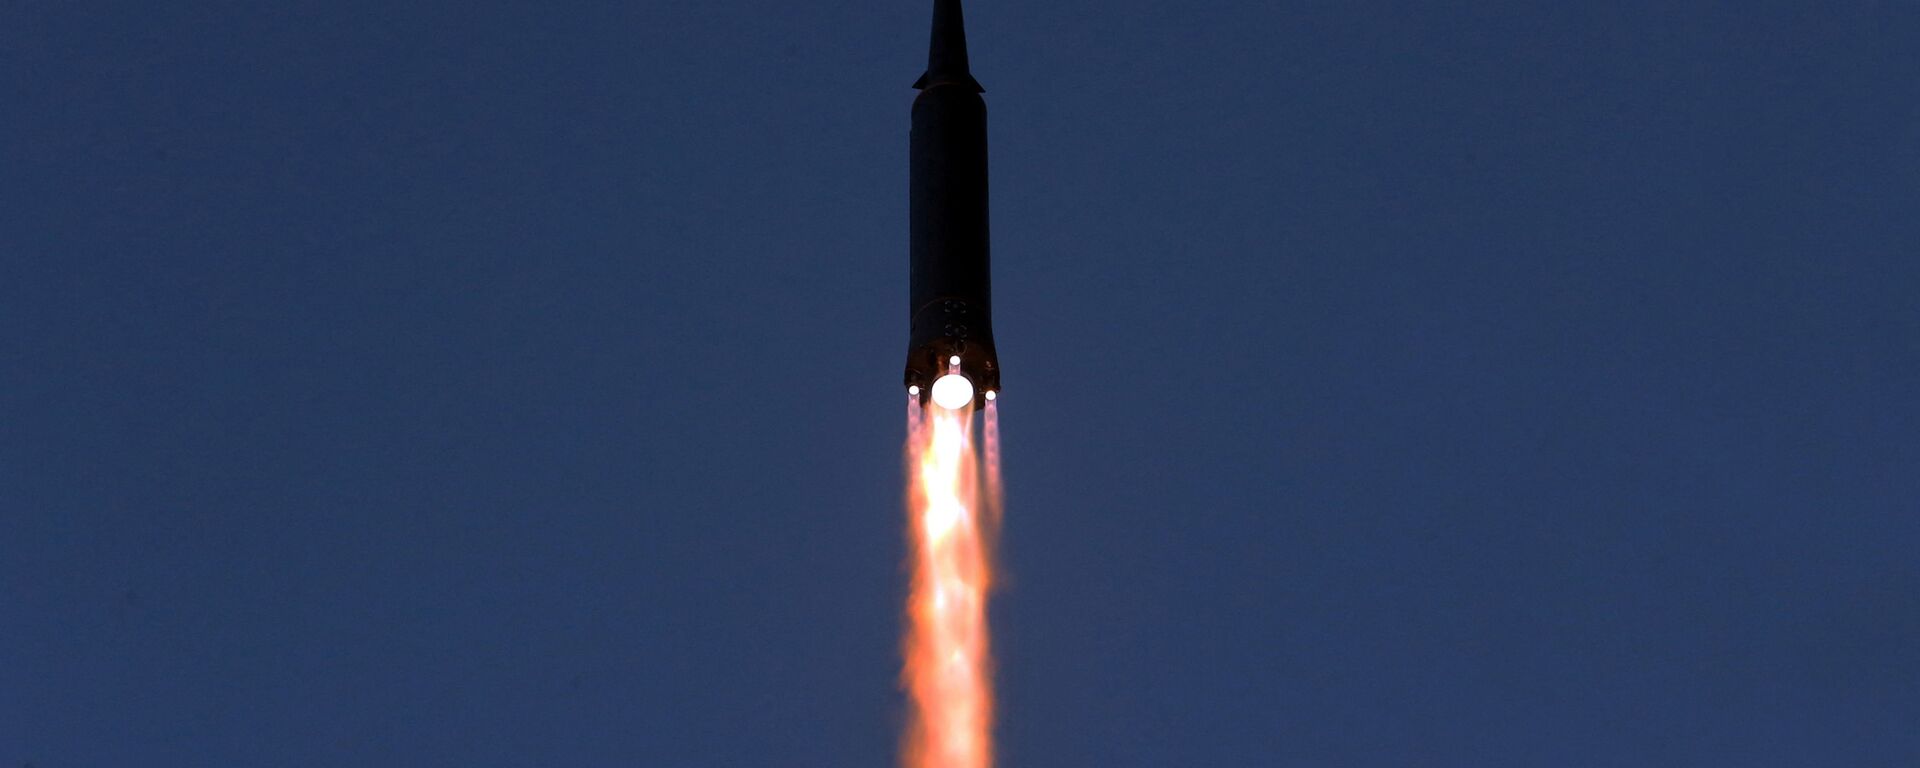 اختبار إطلاق صاروخ تفوق سرعته سرعة الصوت في كوريا الشمالية، 11 يناير 2022  - سبوتنيك عربي, 1920, 25.03.2022